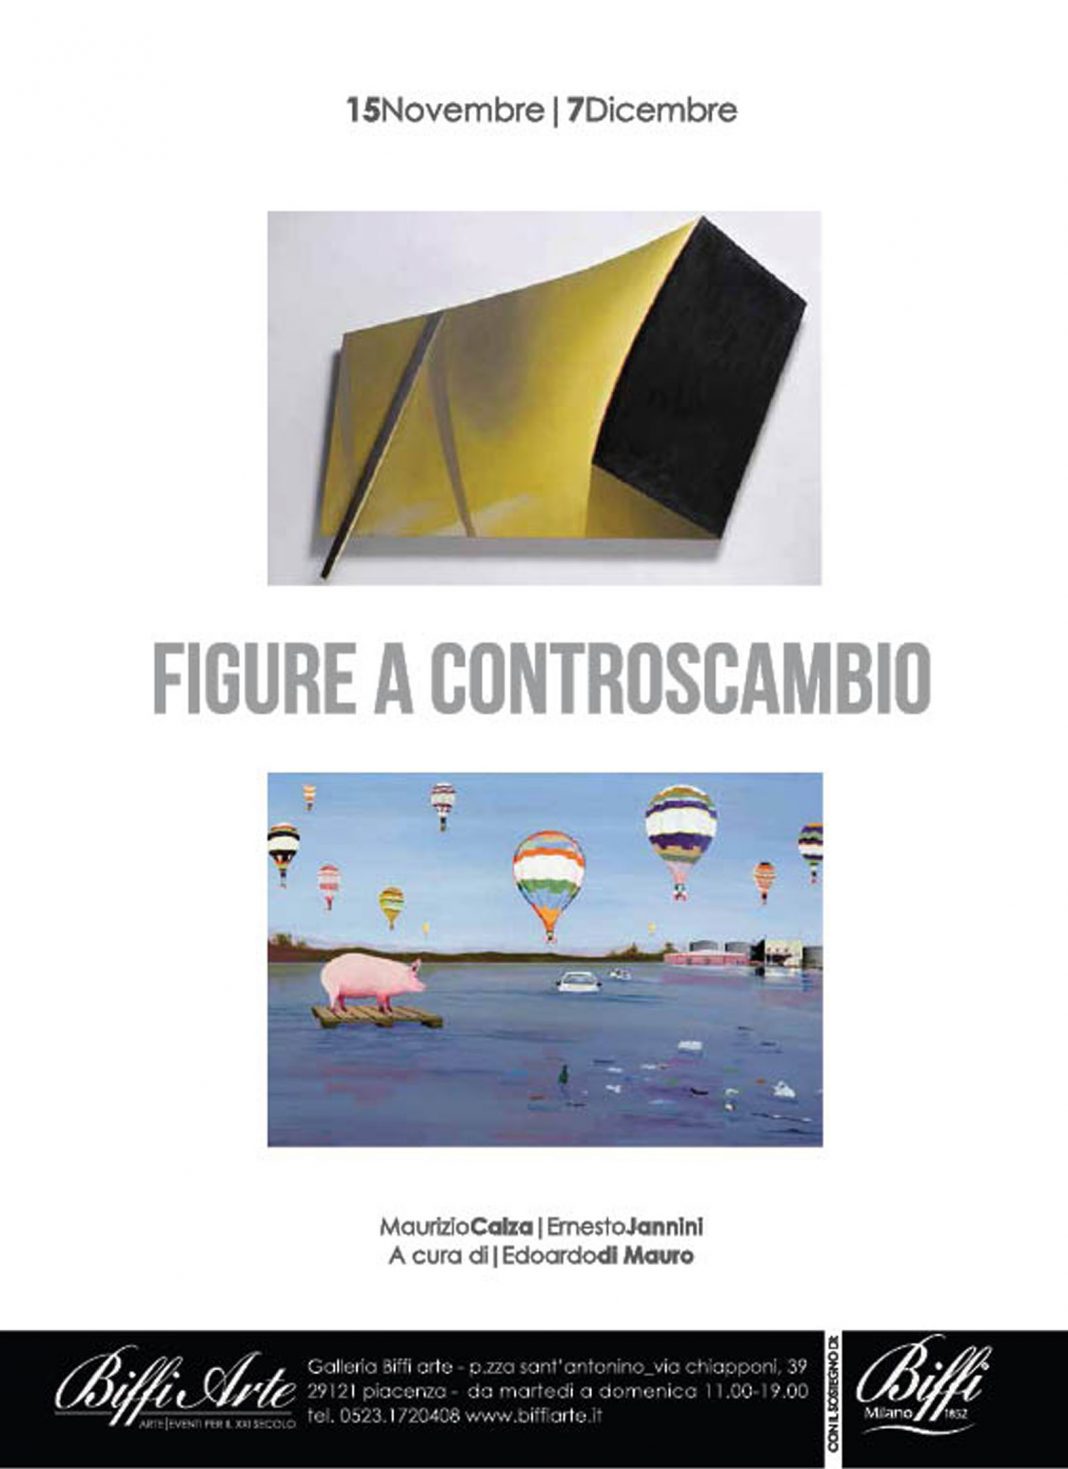 Maurizio Calza | Ernesto Jannini – Figure a controscambiohttps://www.exibart.com/repository/media/eventi/2014/11/maurizio-calza-ernesto-jannini-8211-figure-a-controscambio-1068x1469.jpg